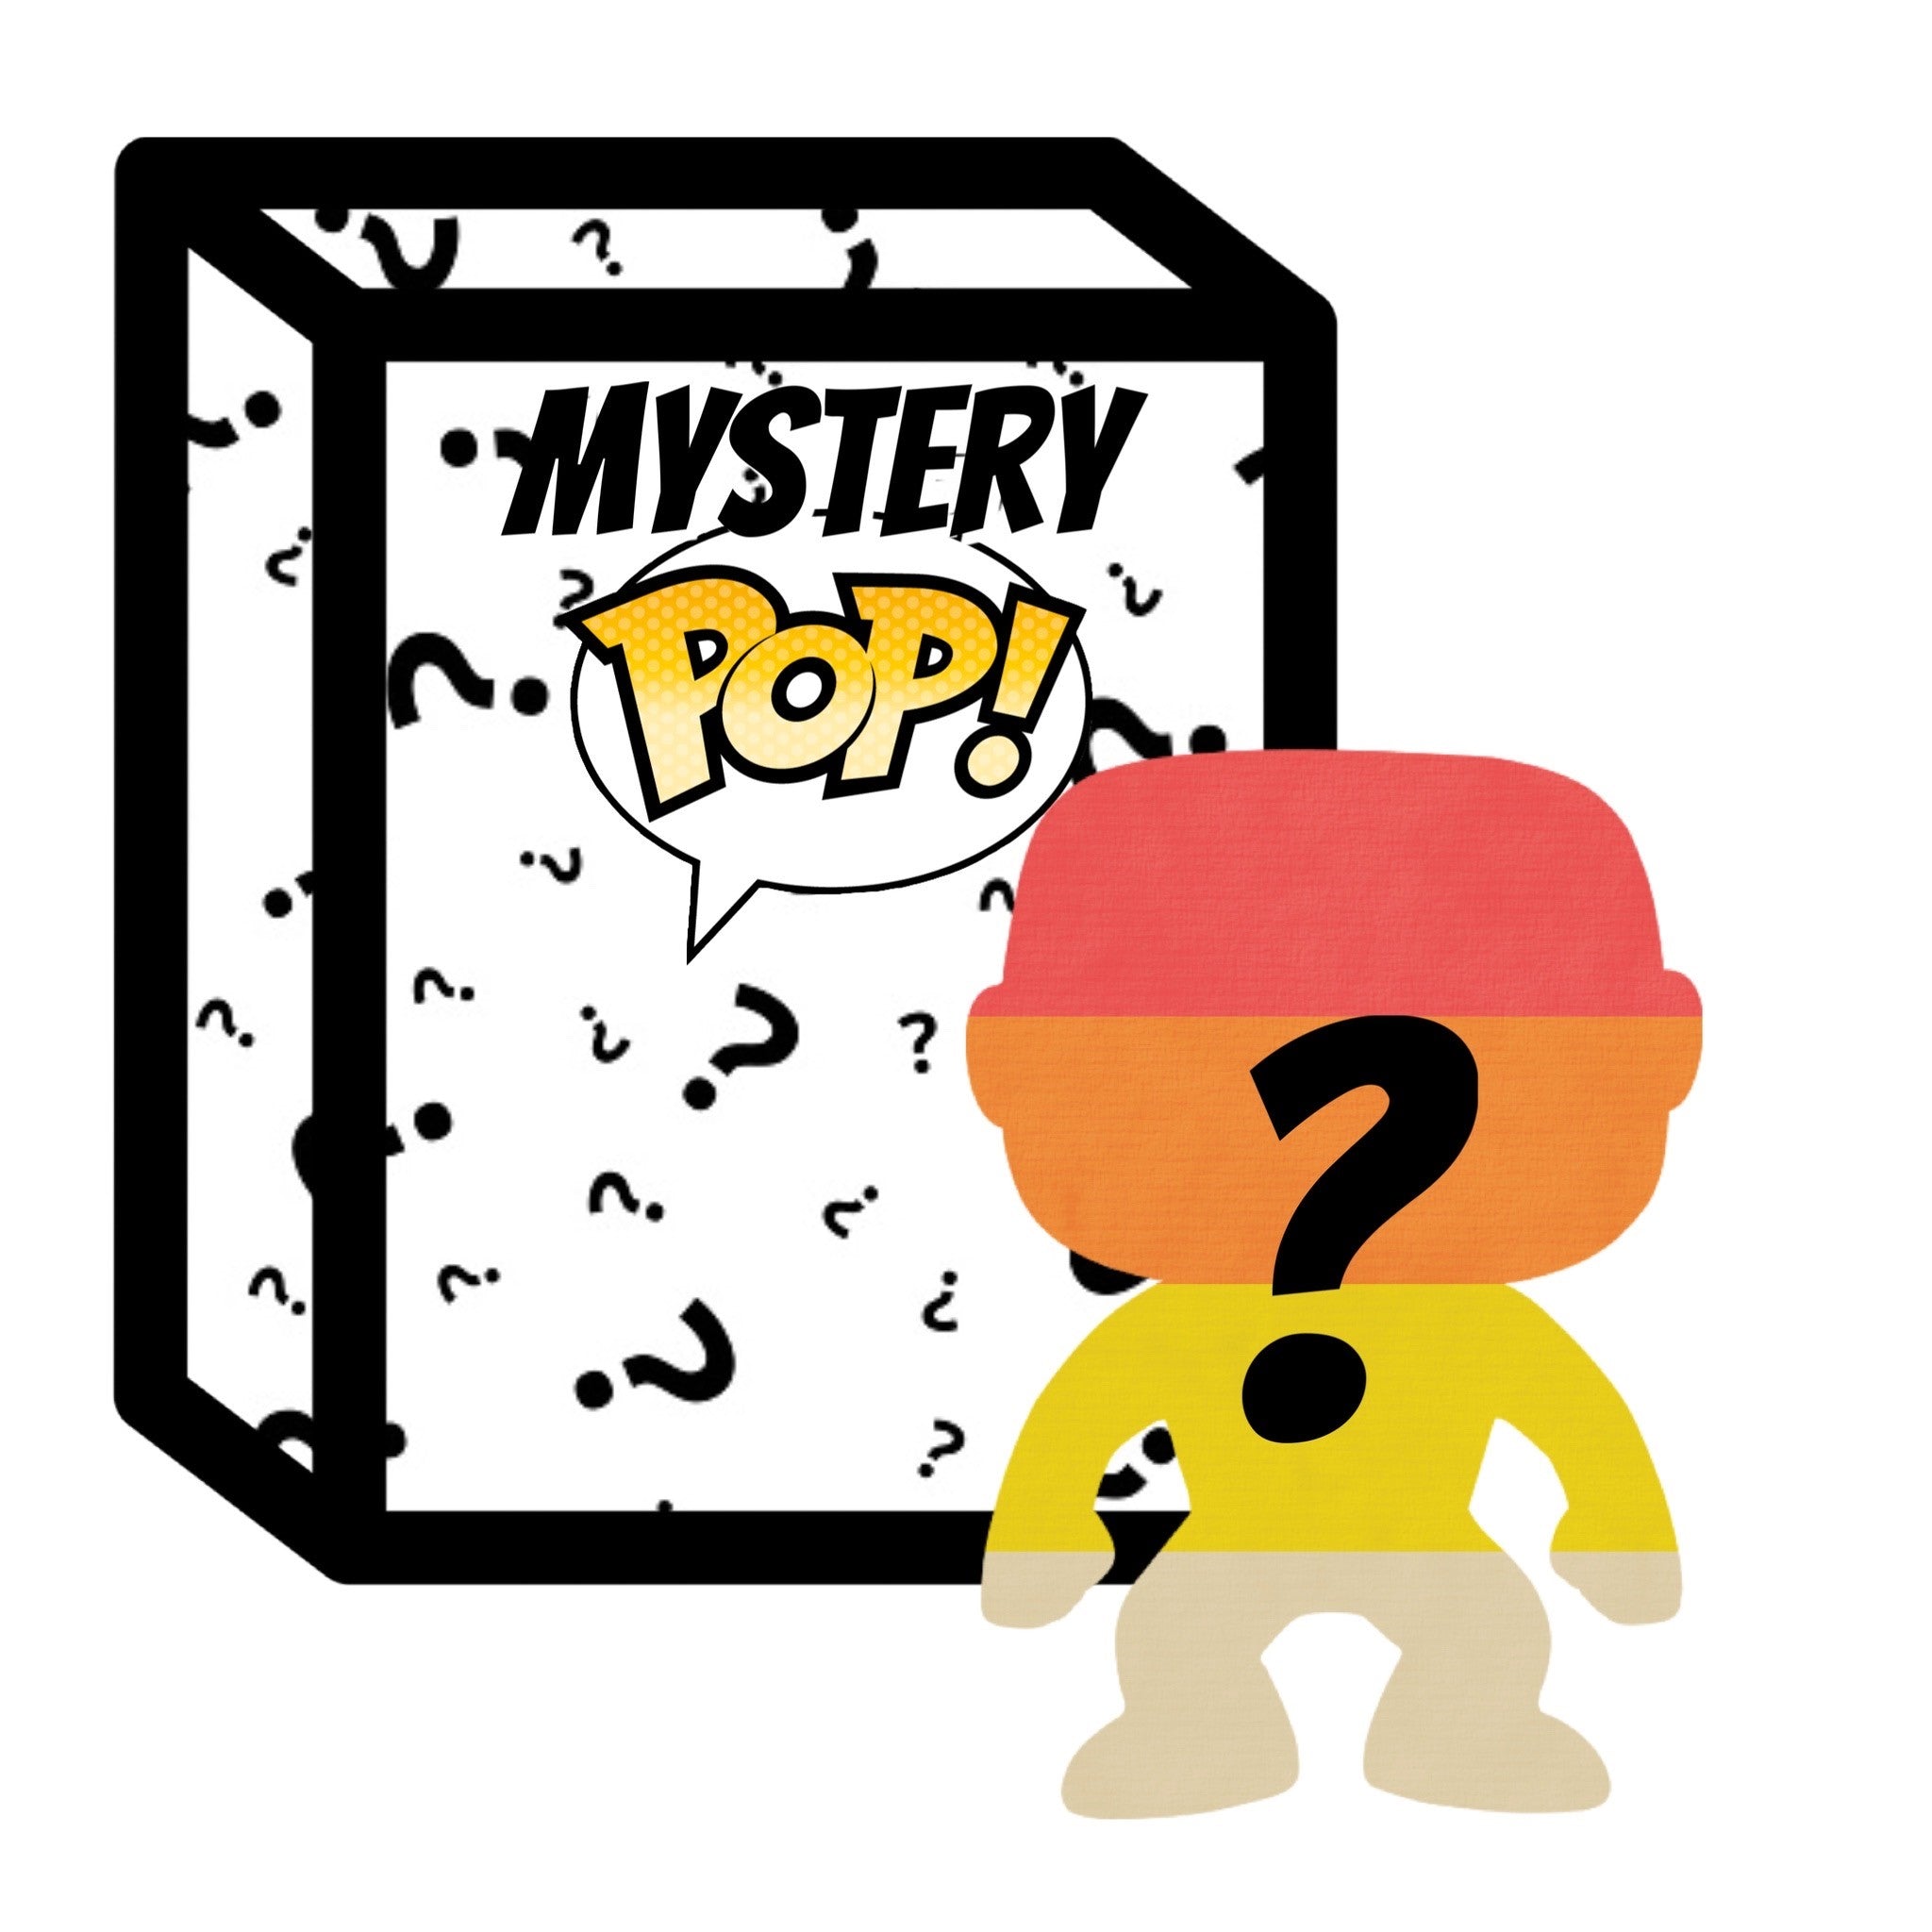 Mystery AS-IS Funko POP